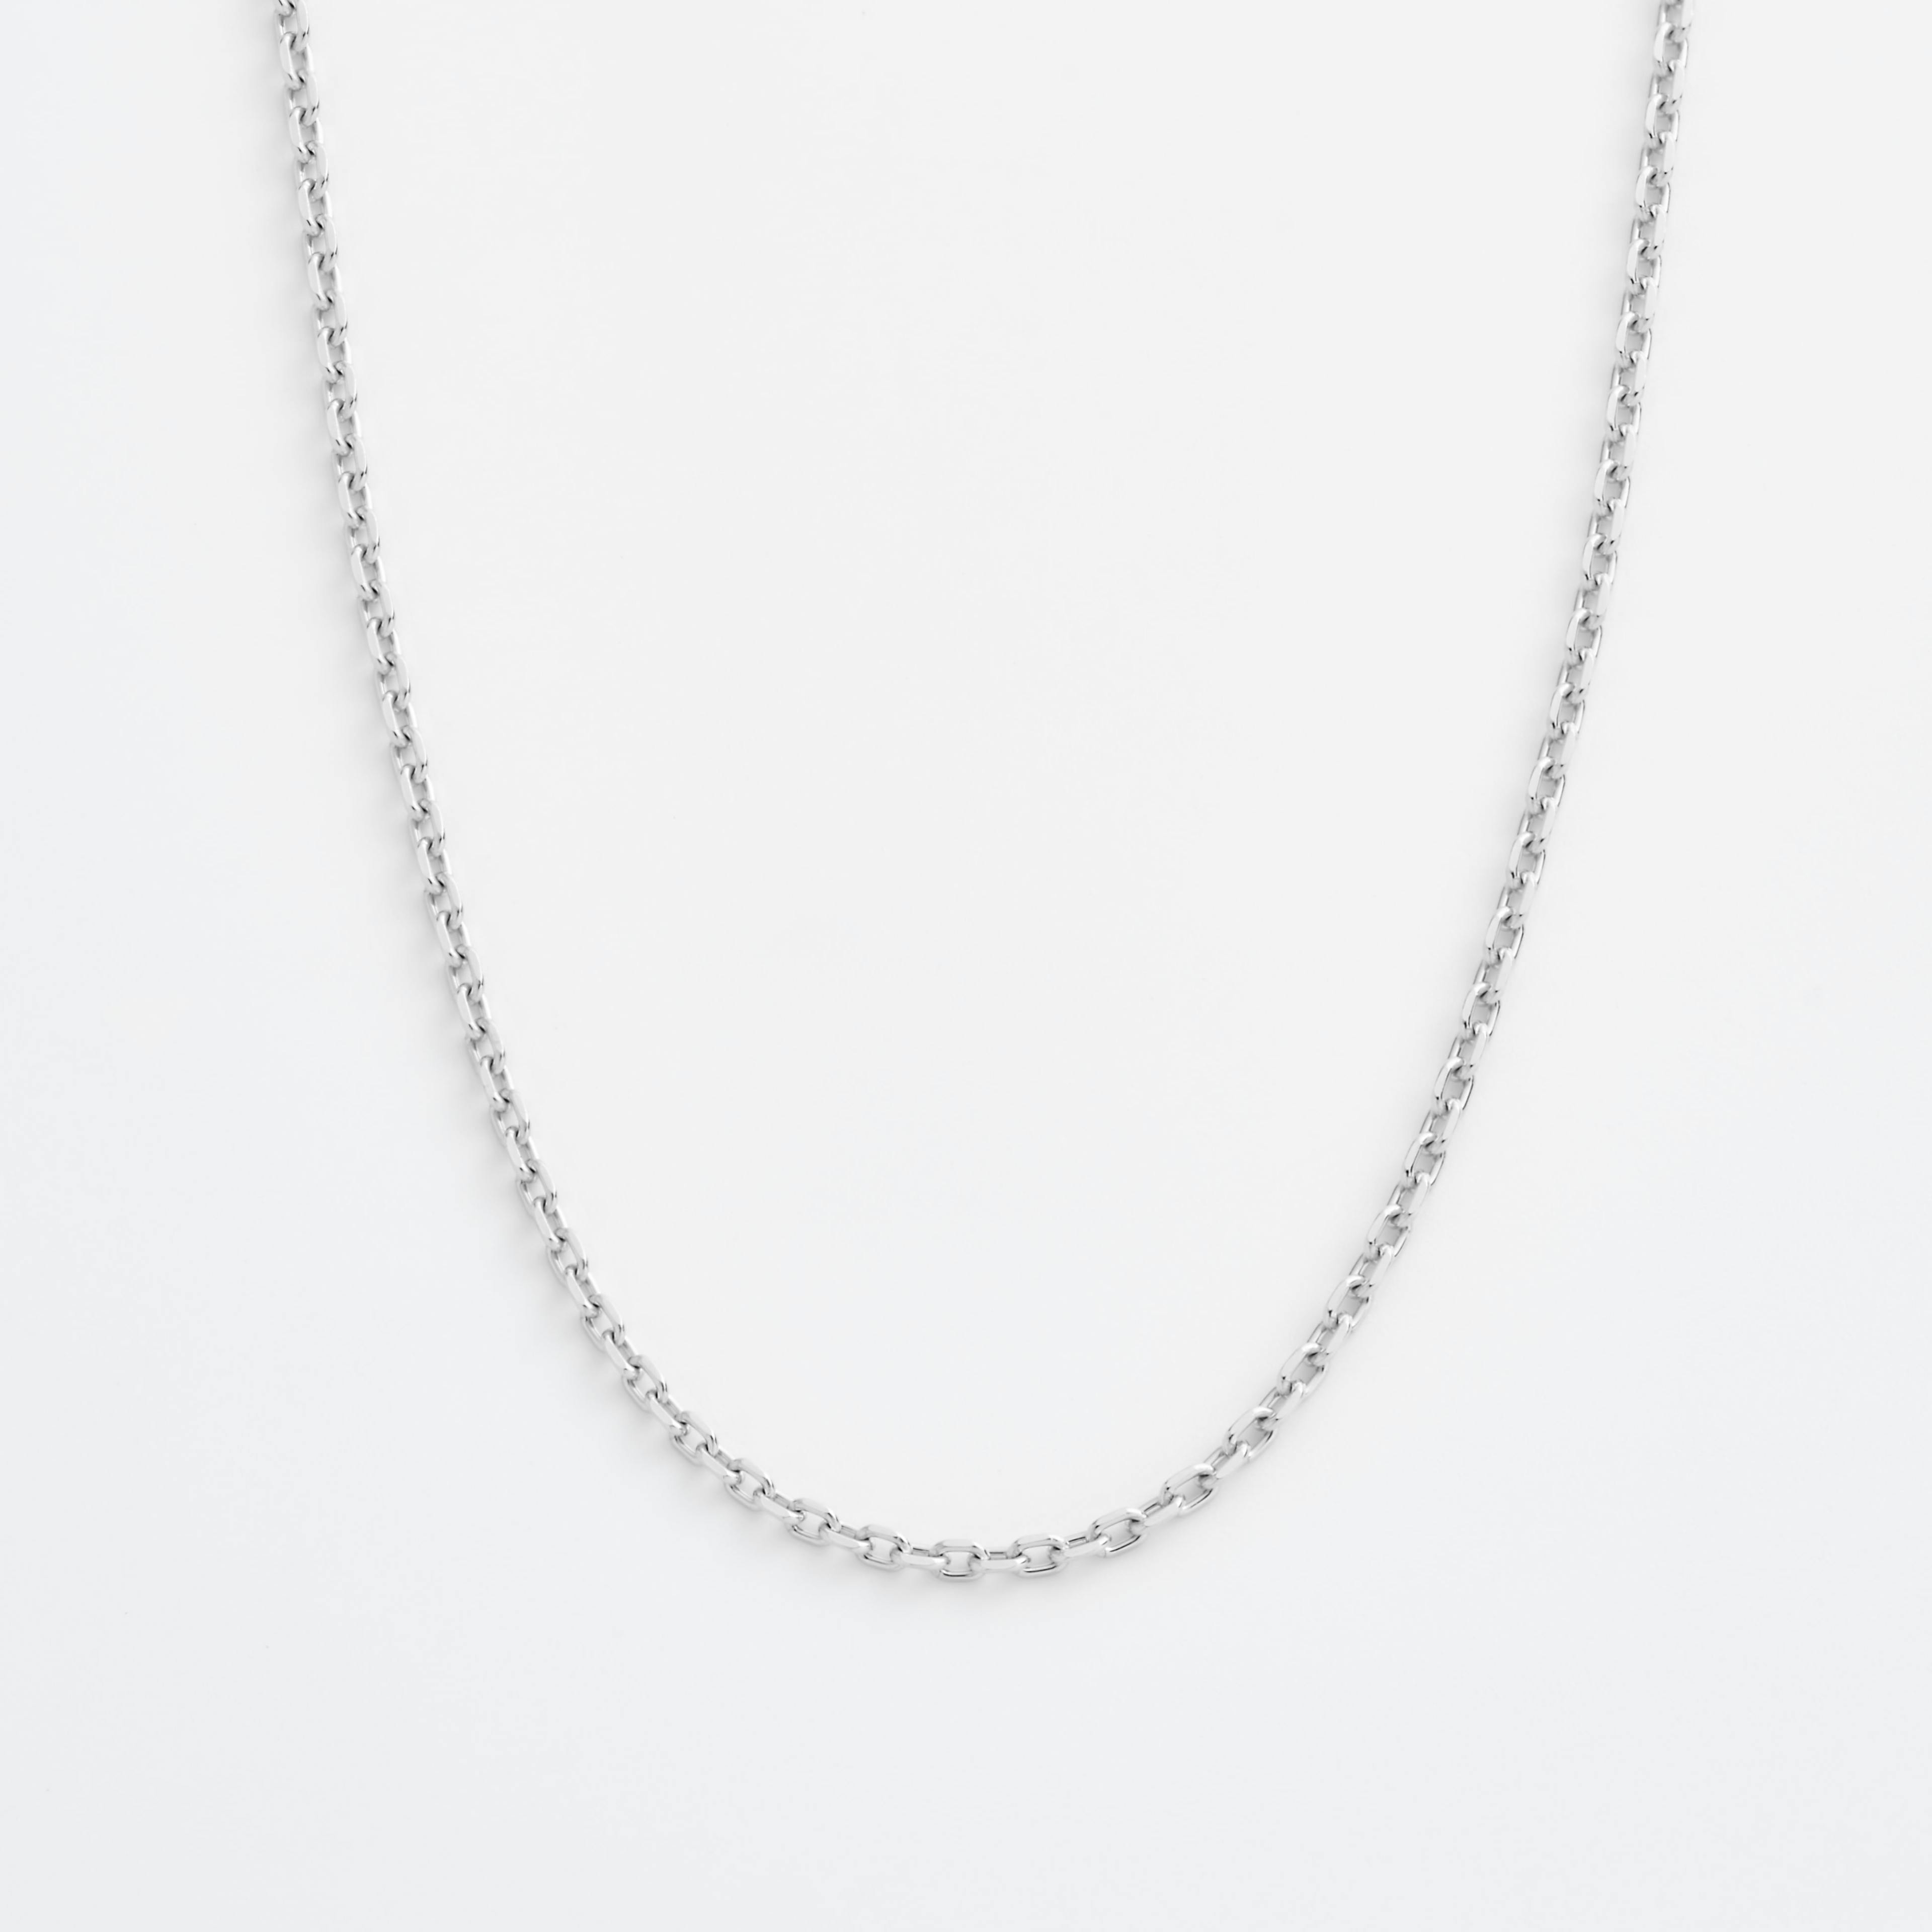 Shop Platinum Necklace Chains Wide Diamond Cut Cable Chain Necklace